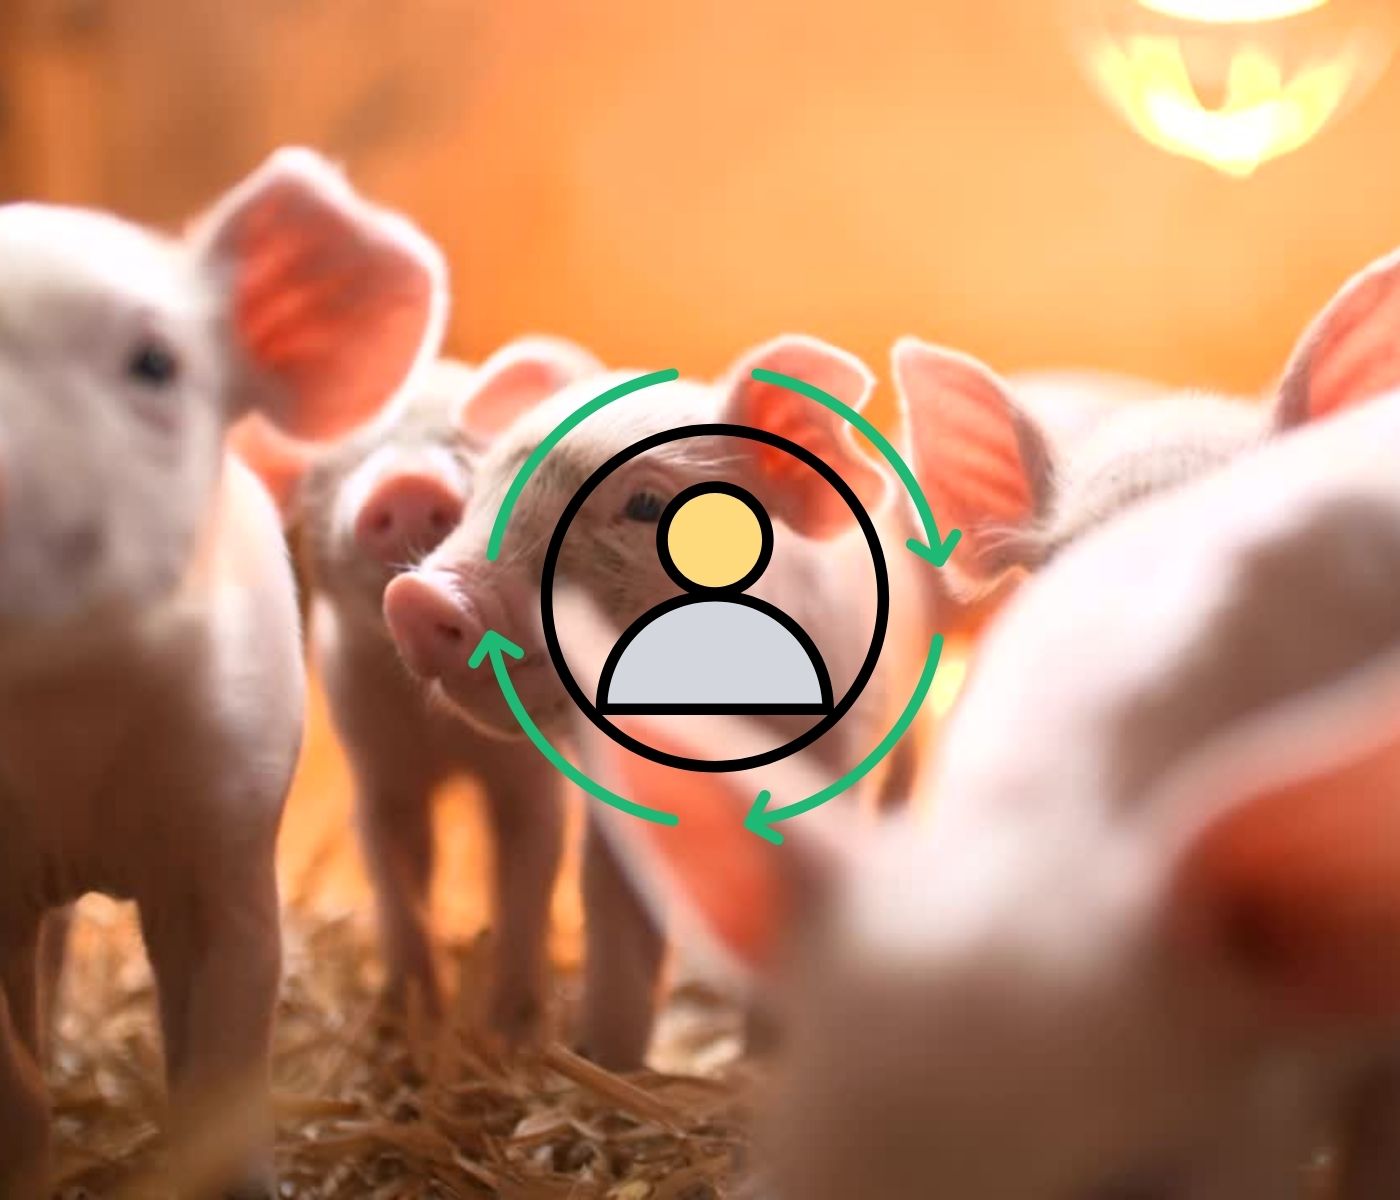 Personal de granja porcina: percepción sobre eficiencia productiva, bioseguridad y capacitación en maternidad